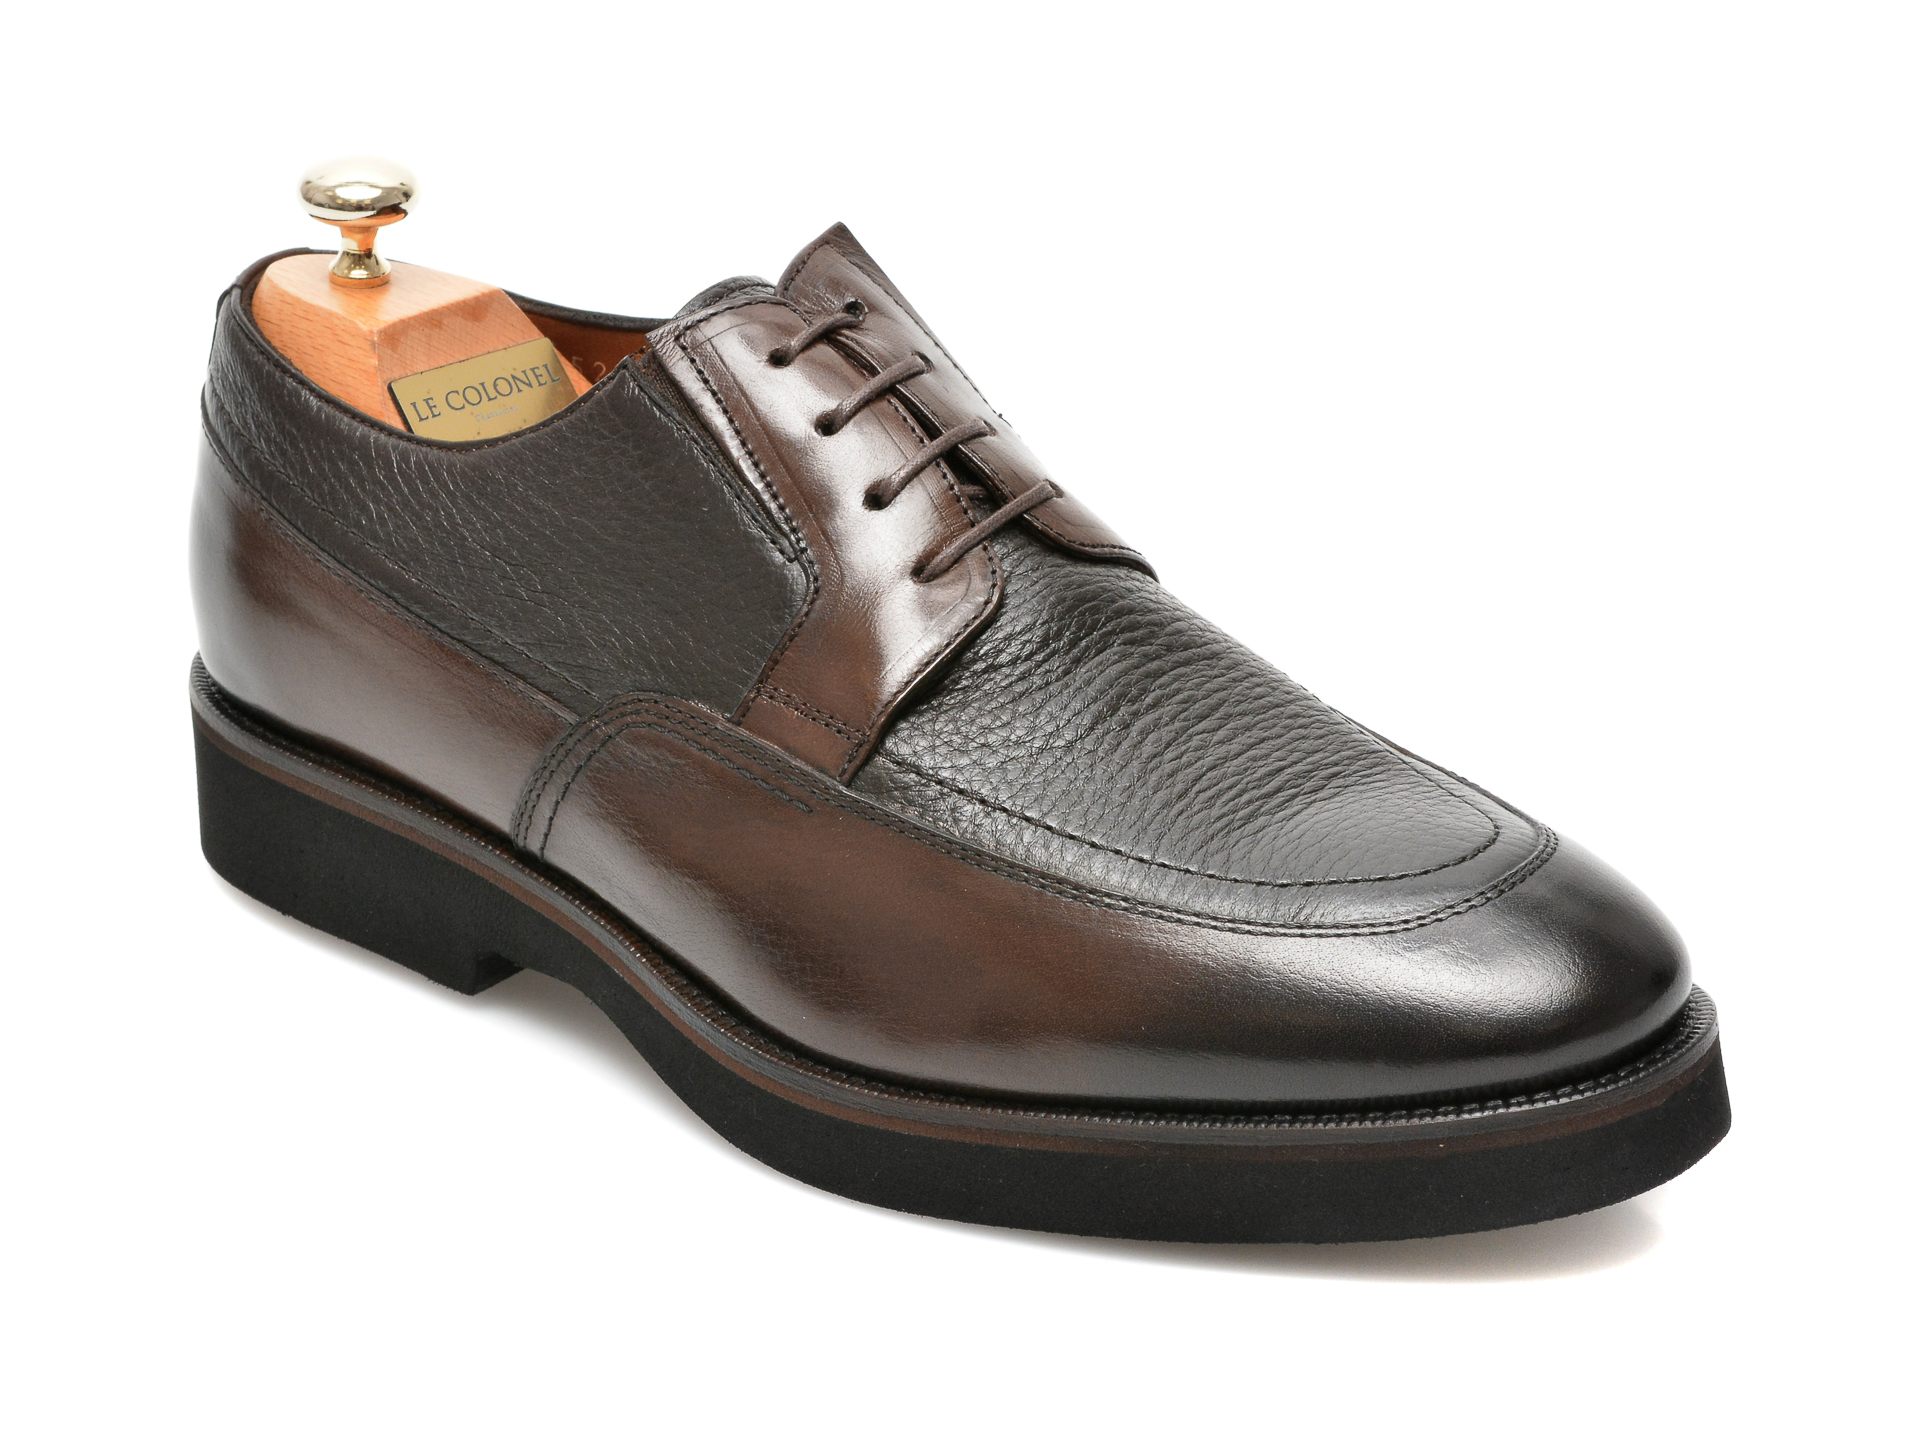 Pantofi LE COLONEL maro, 43452, din piele naturala Le Colonel imagine noua